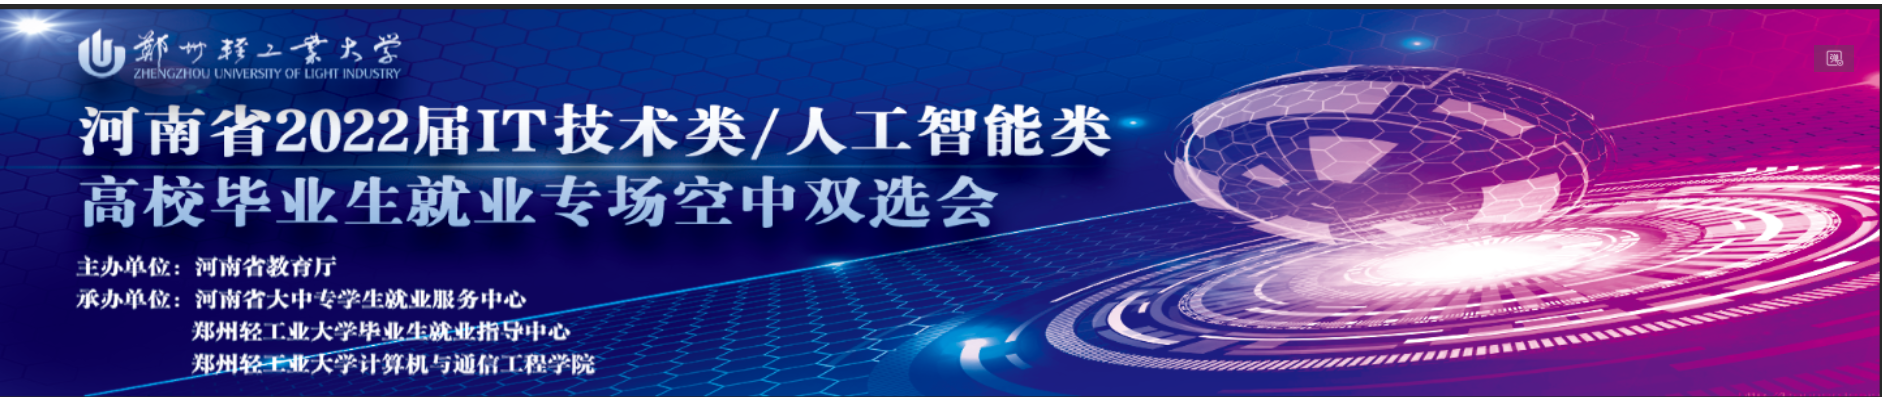 我校成功举办河南省2022届IT技术类/人工智能类 高校毕业生就业专场空中双选会